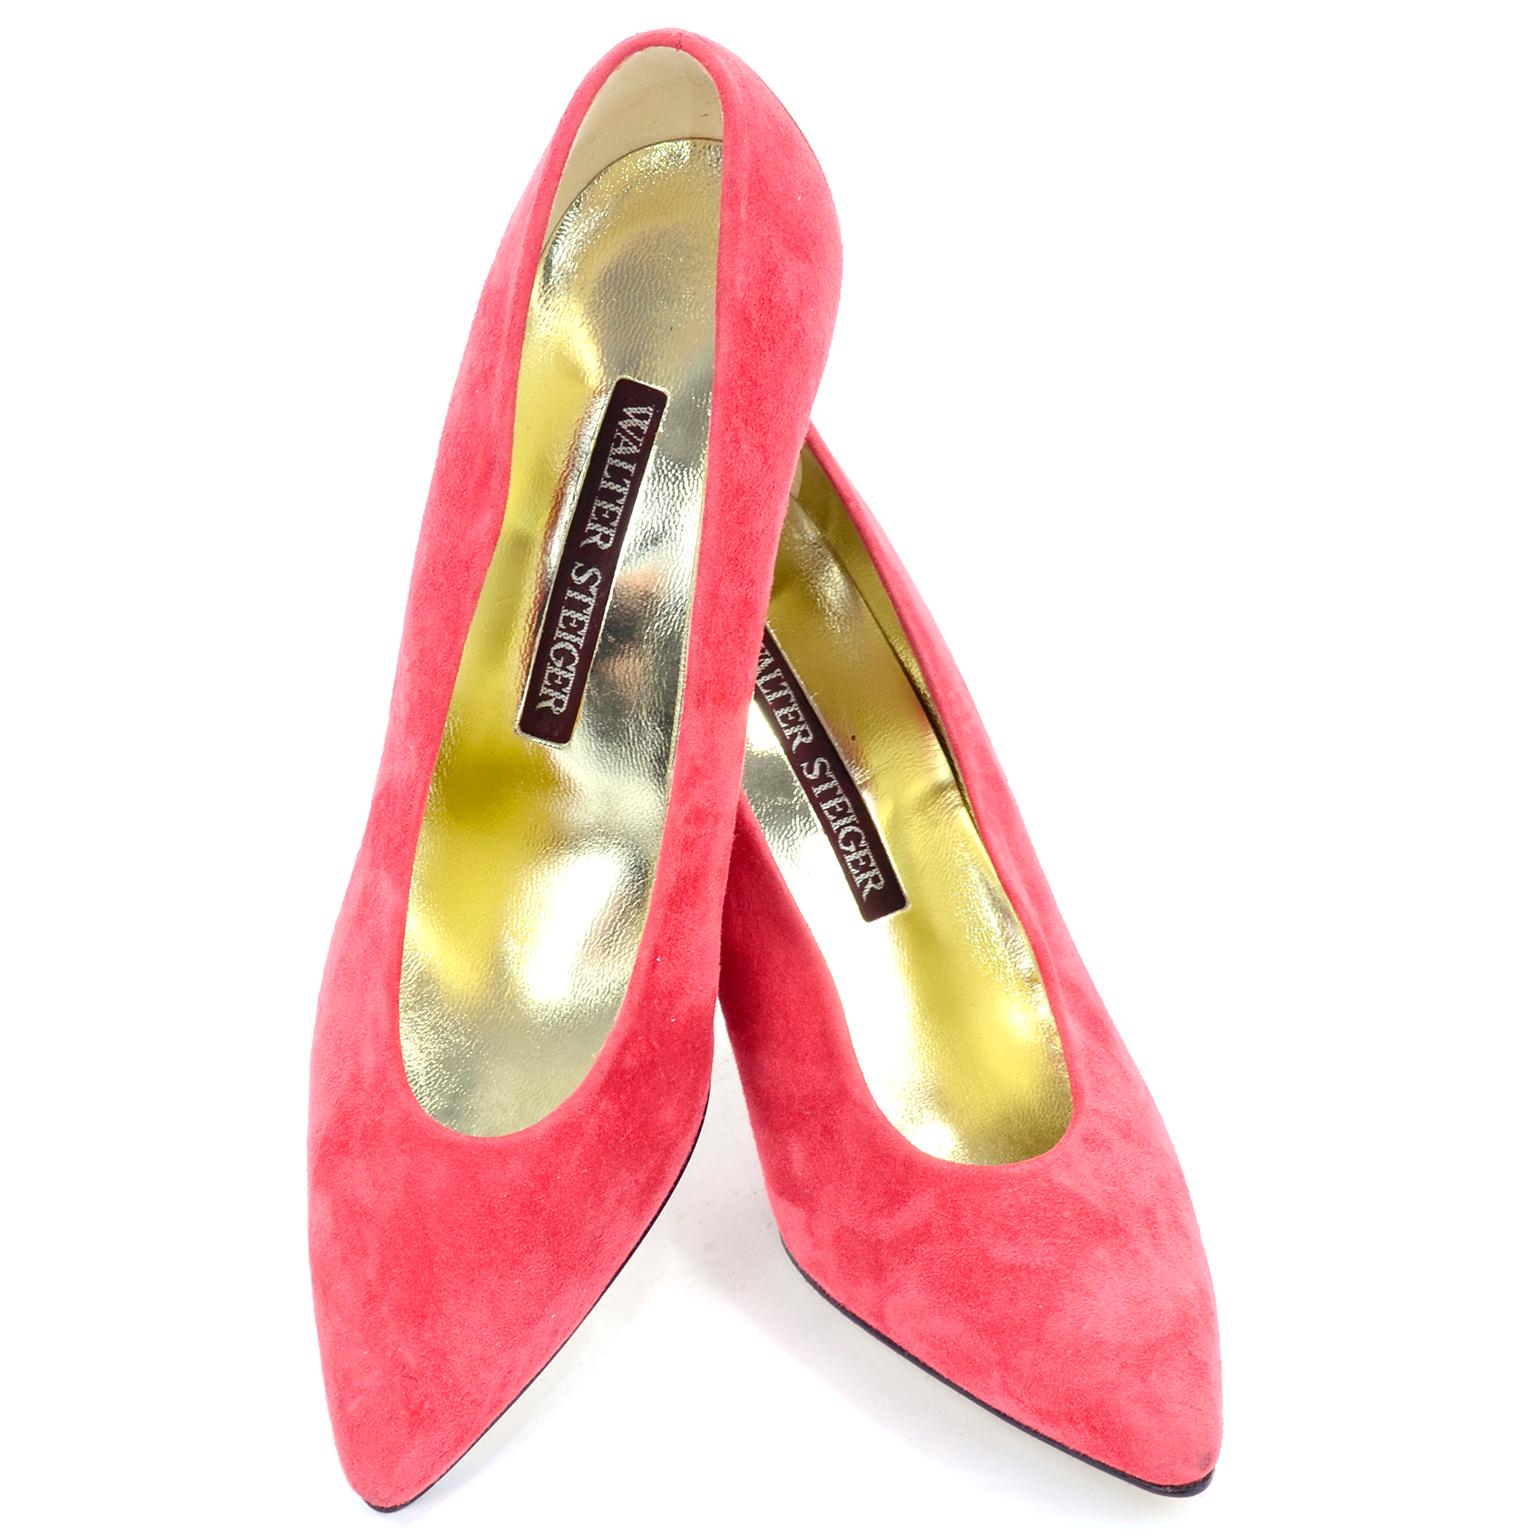 Ce sont d'incroyables chaussures vintage Walter Steiger en daim rose saumon ou rose corail.  Le talon se recourbe à l'arrière et est fabriqué dans un métal argenté réfléchissant semblable à un miroir. Porté peut-être une fois, voire pas du tout.